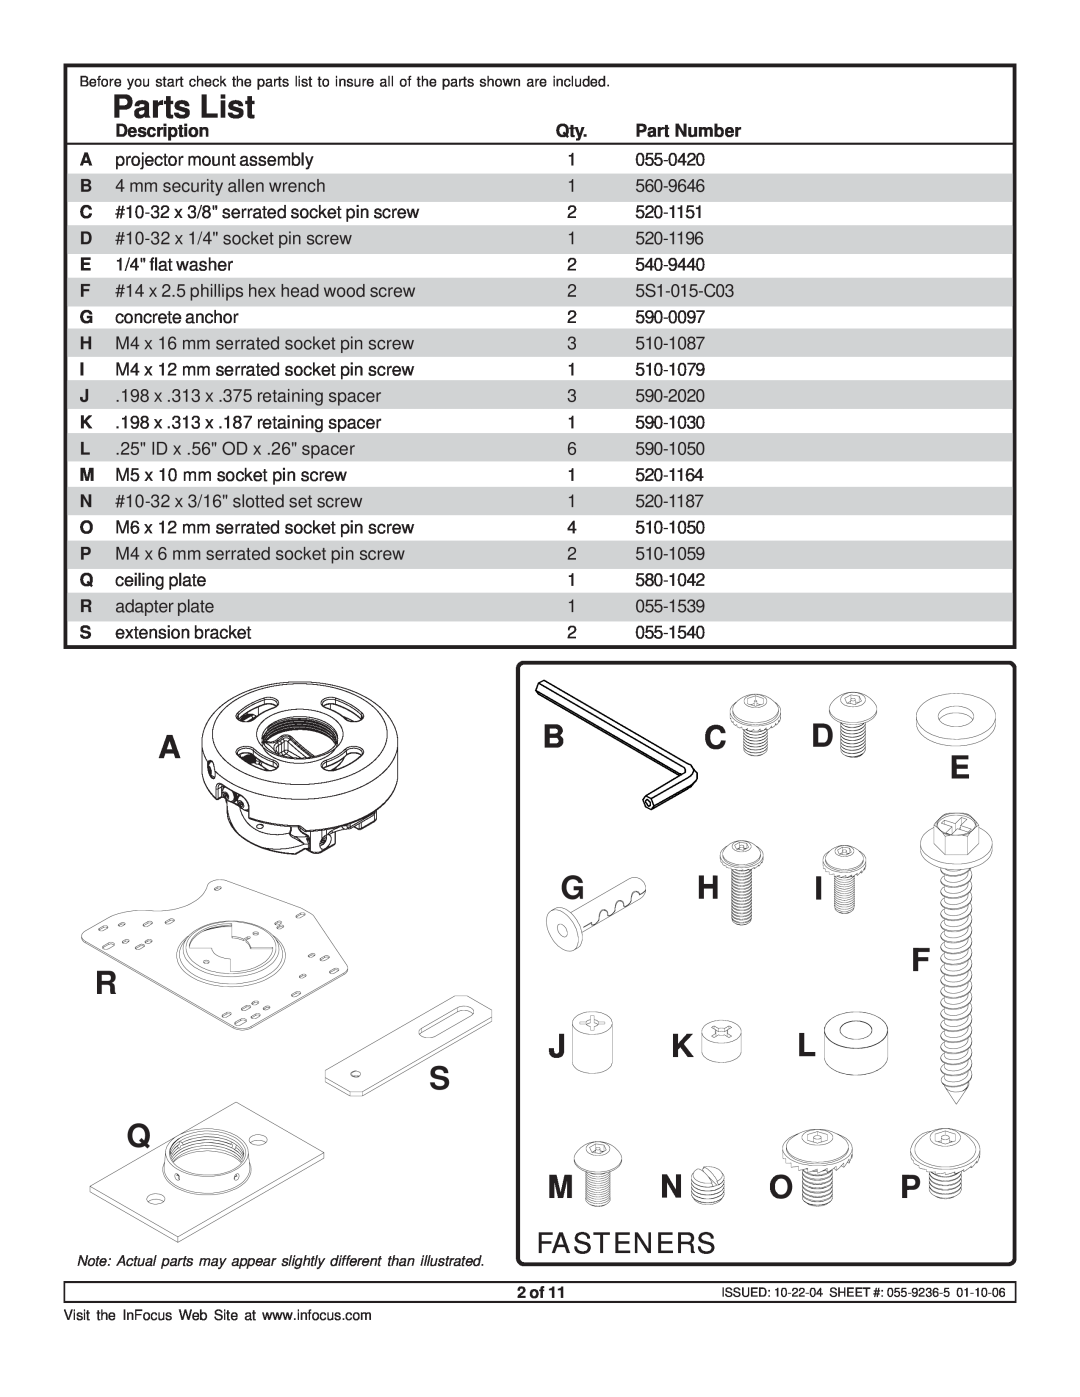 InFocus SP-CEIL-UNIV instruction sheet Parts List, Ab C D E G H, J K L S Q M N O P, Fasteners 